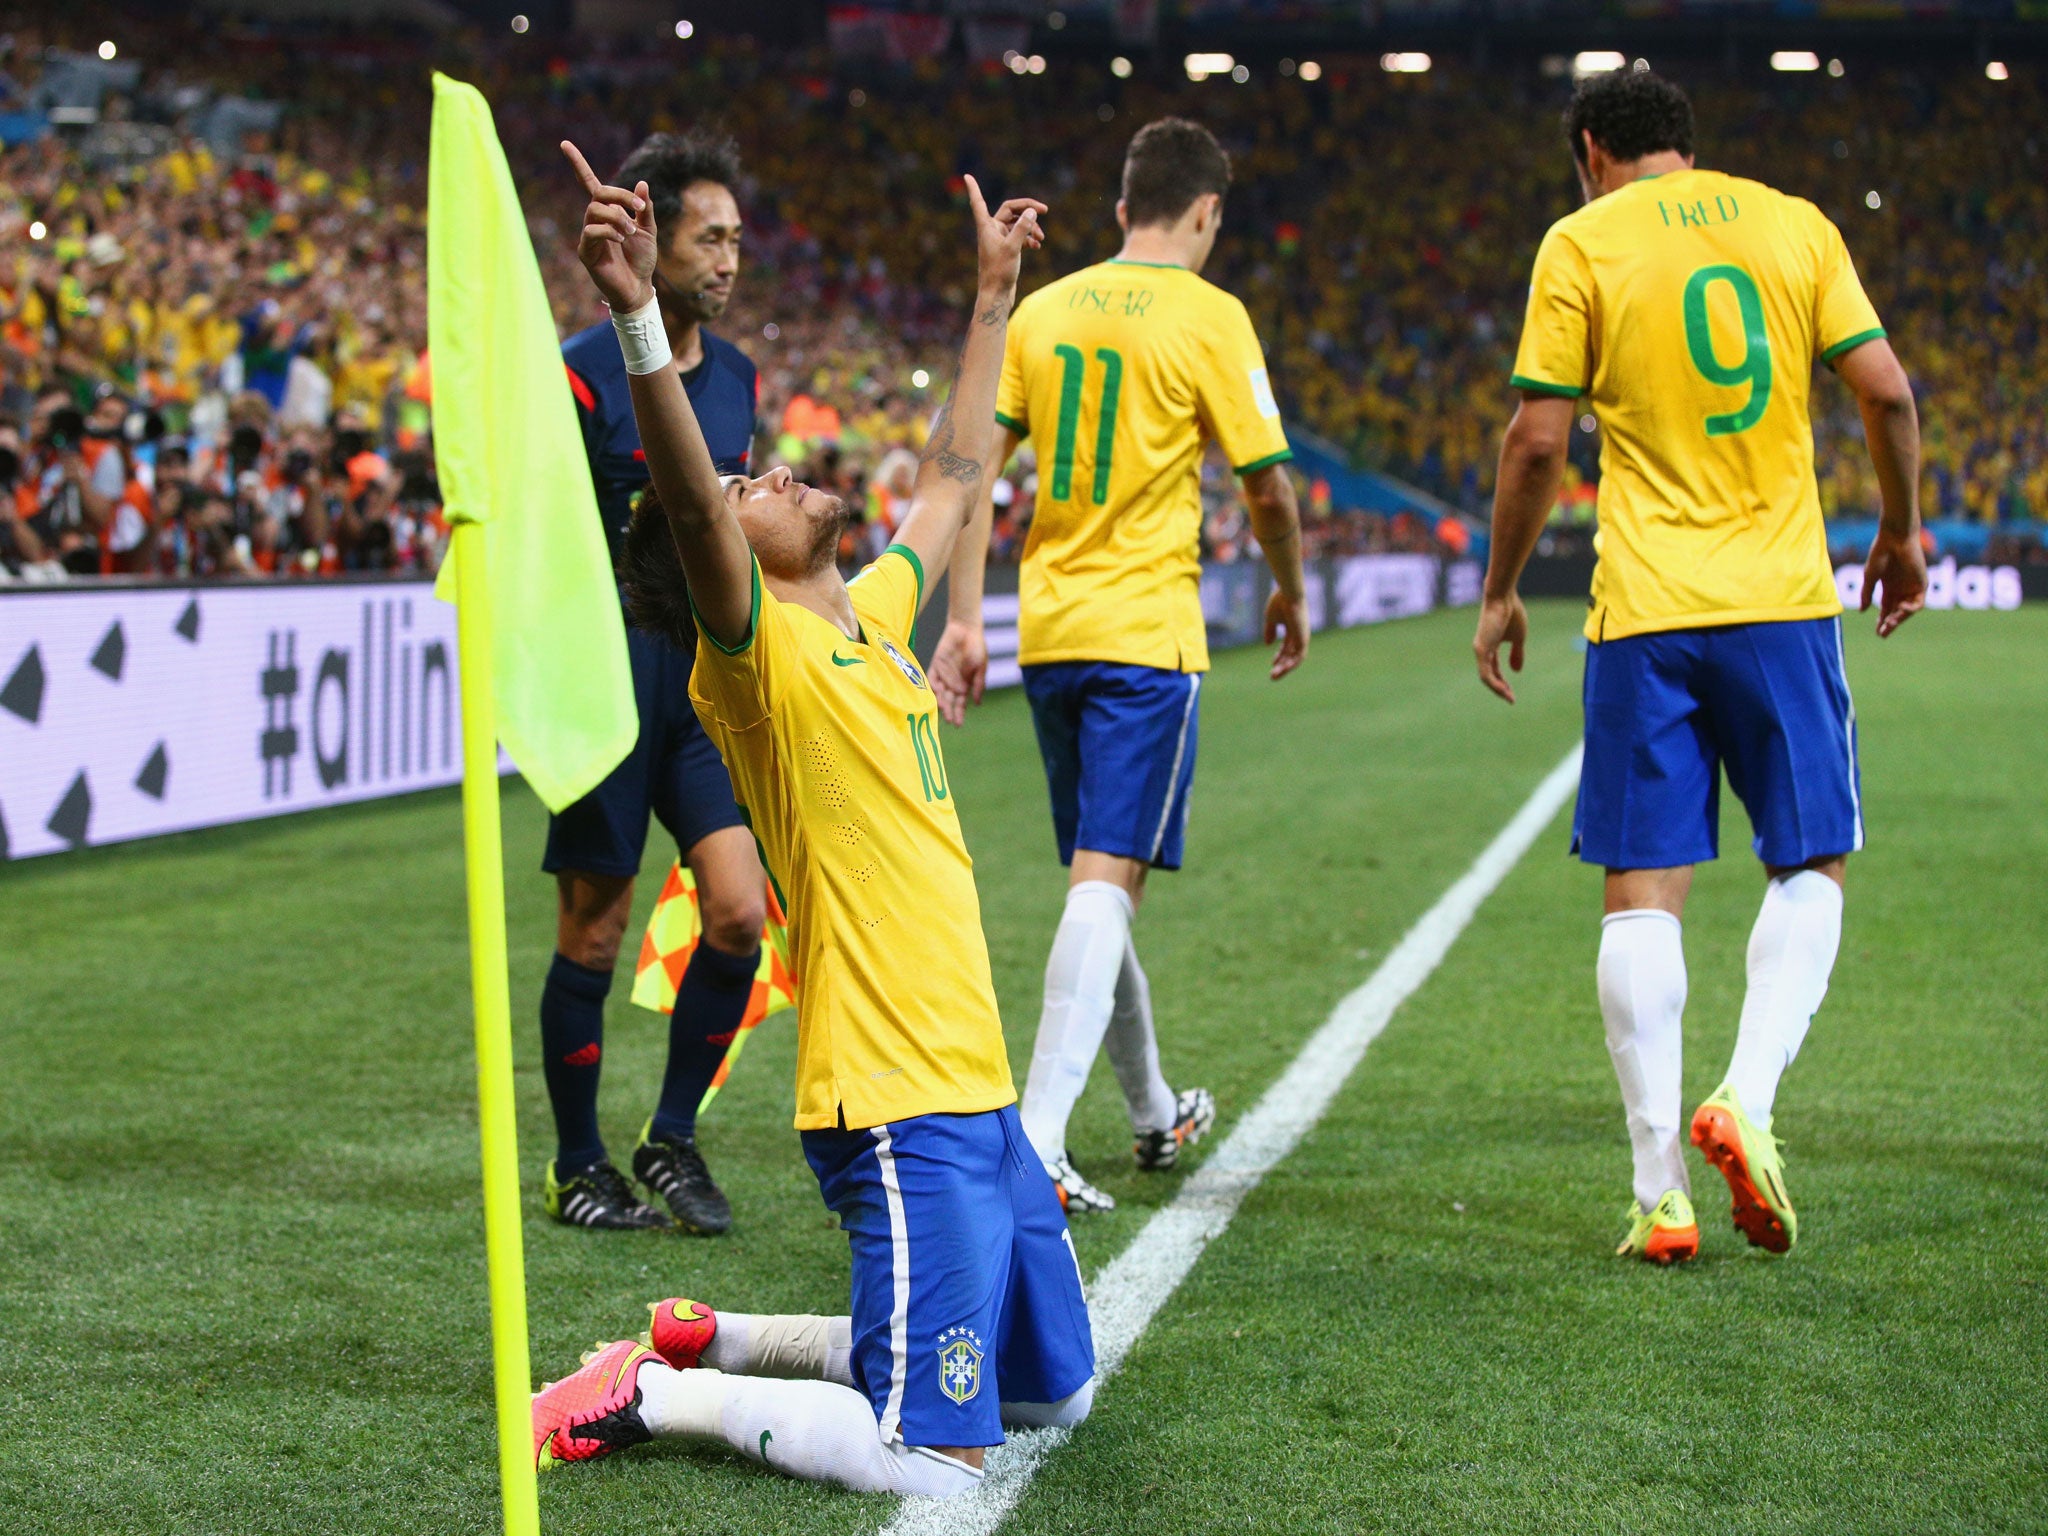 Neymar of Brazil celebrates scoring against Croatia